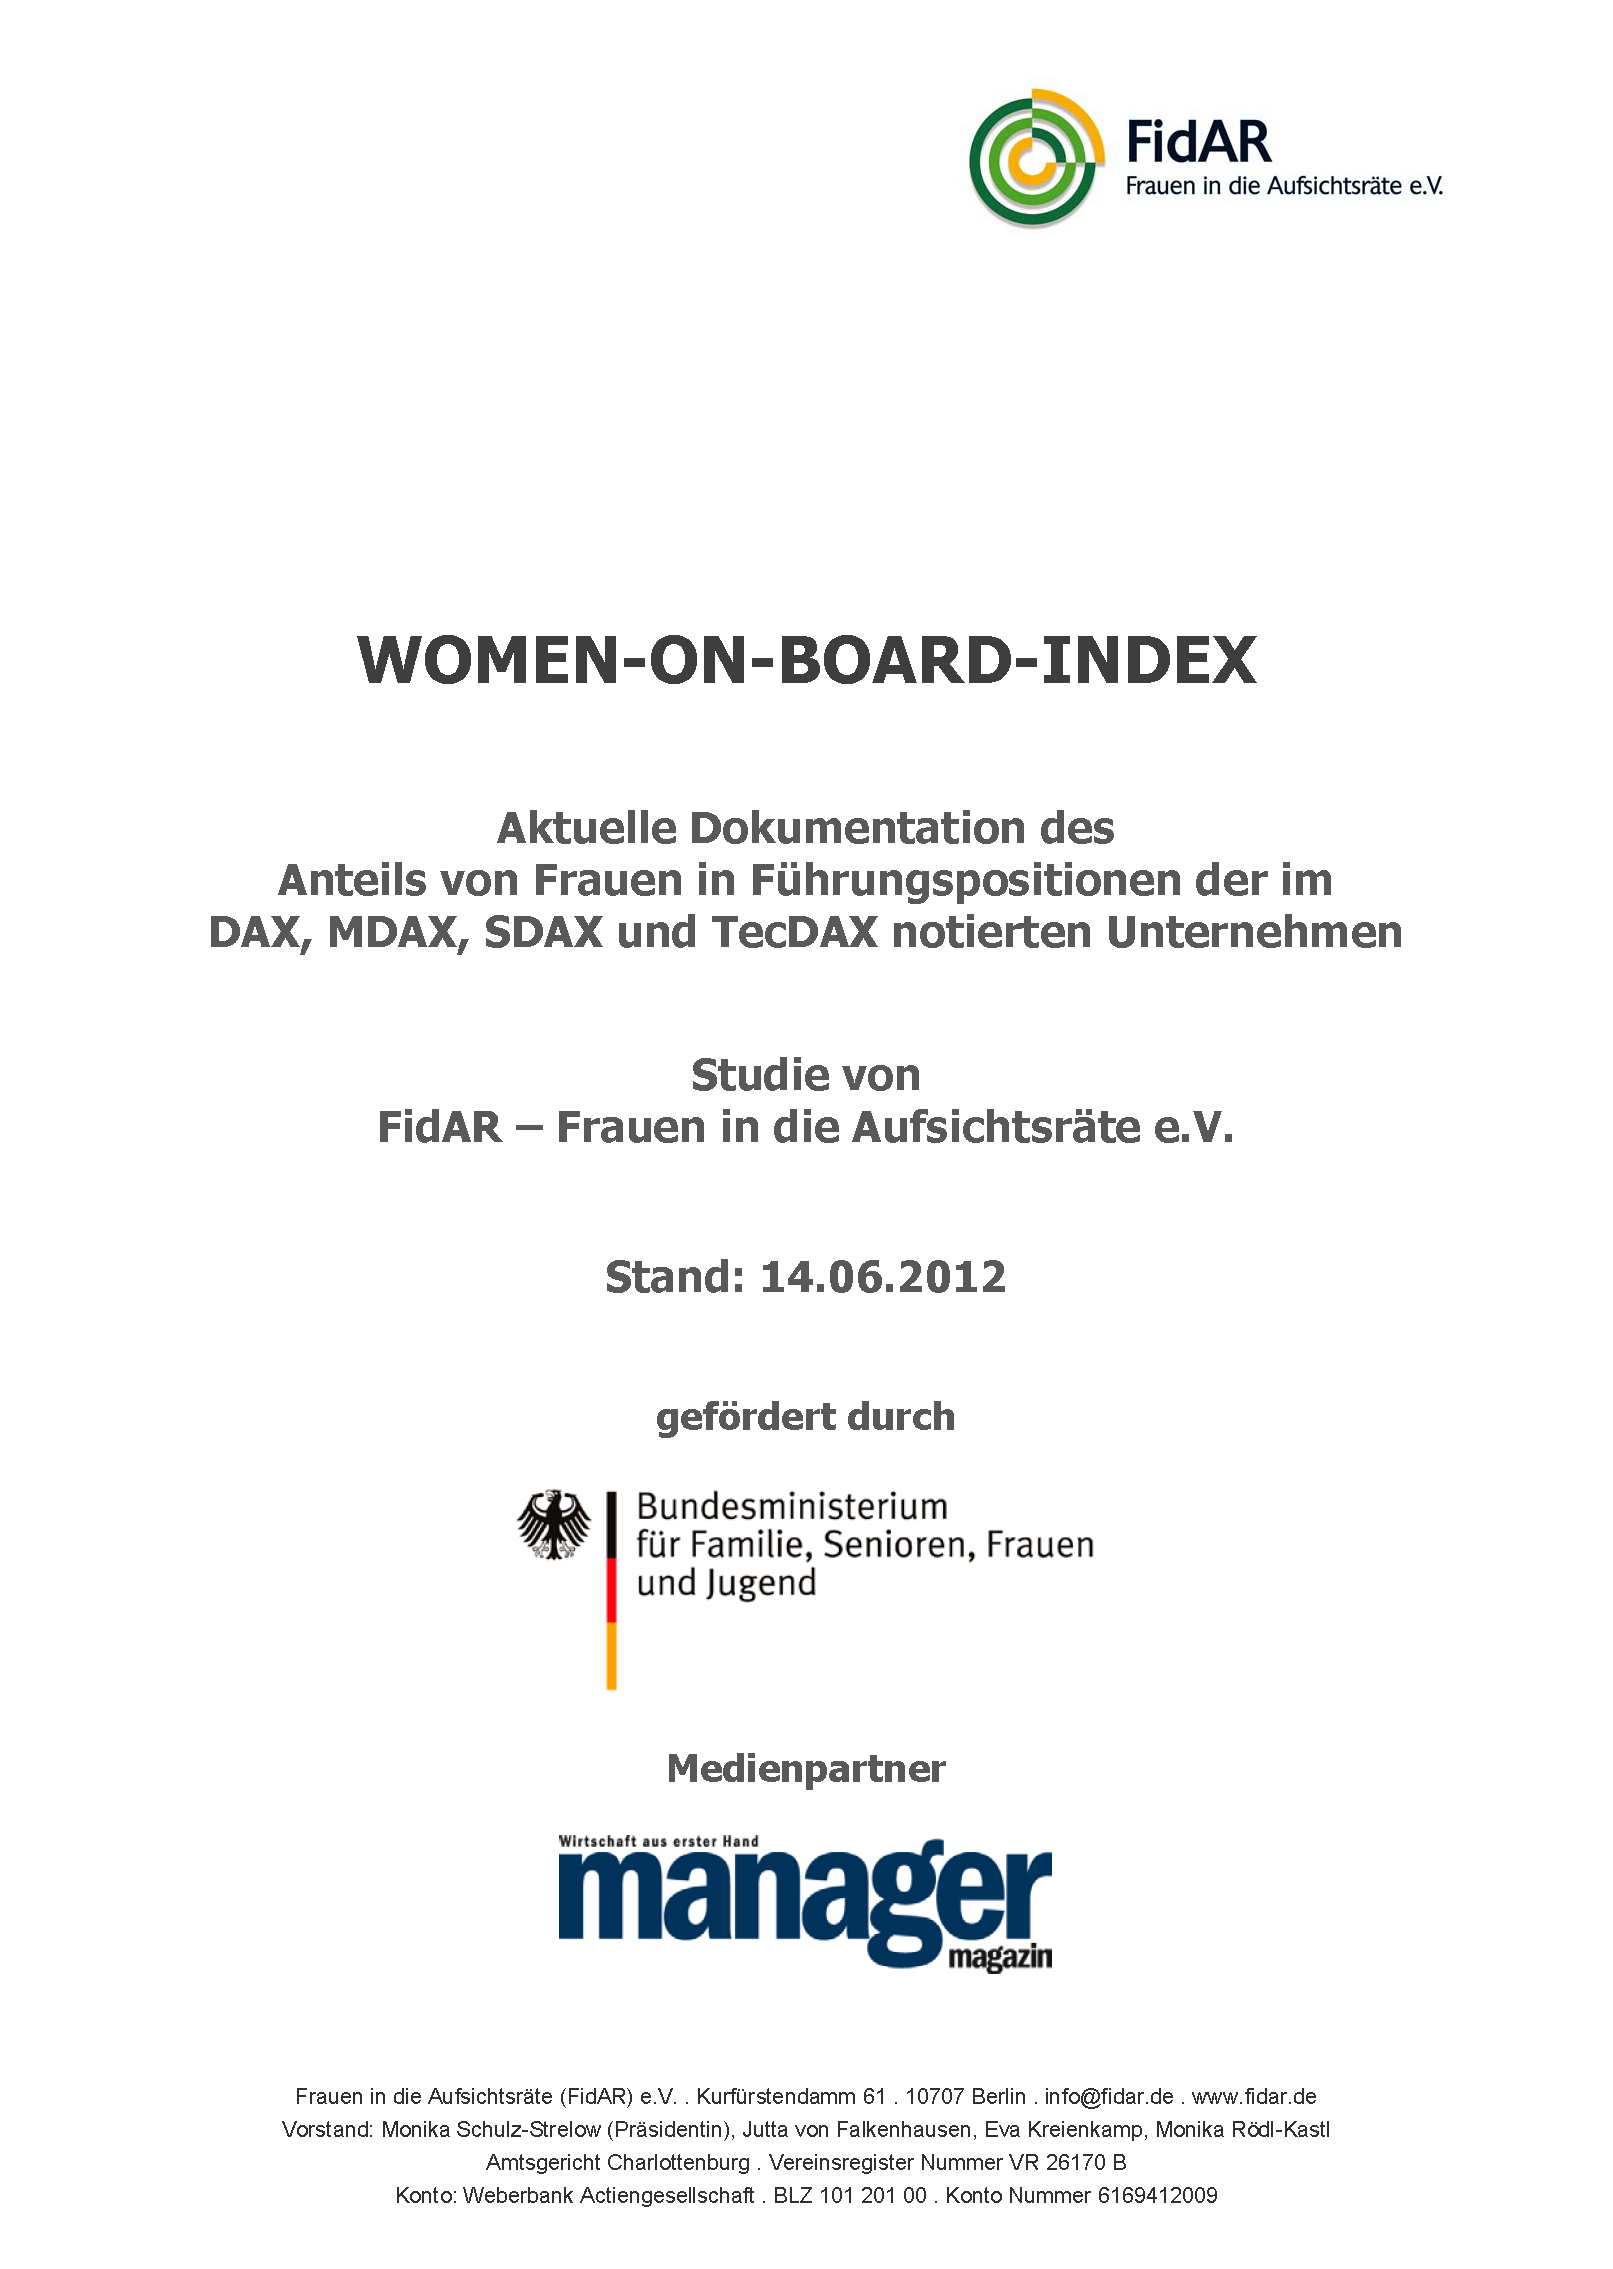 WoB-Index 160 2012-2